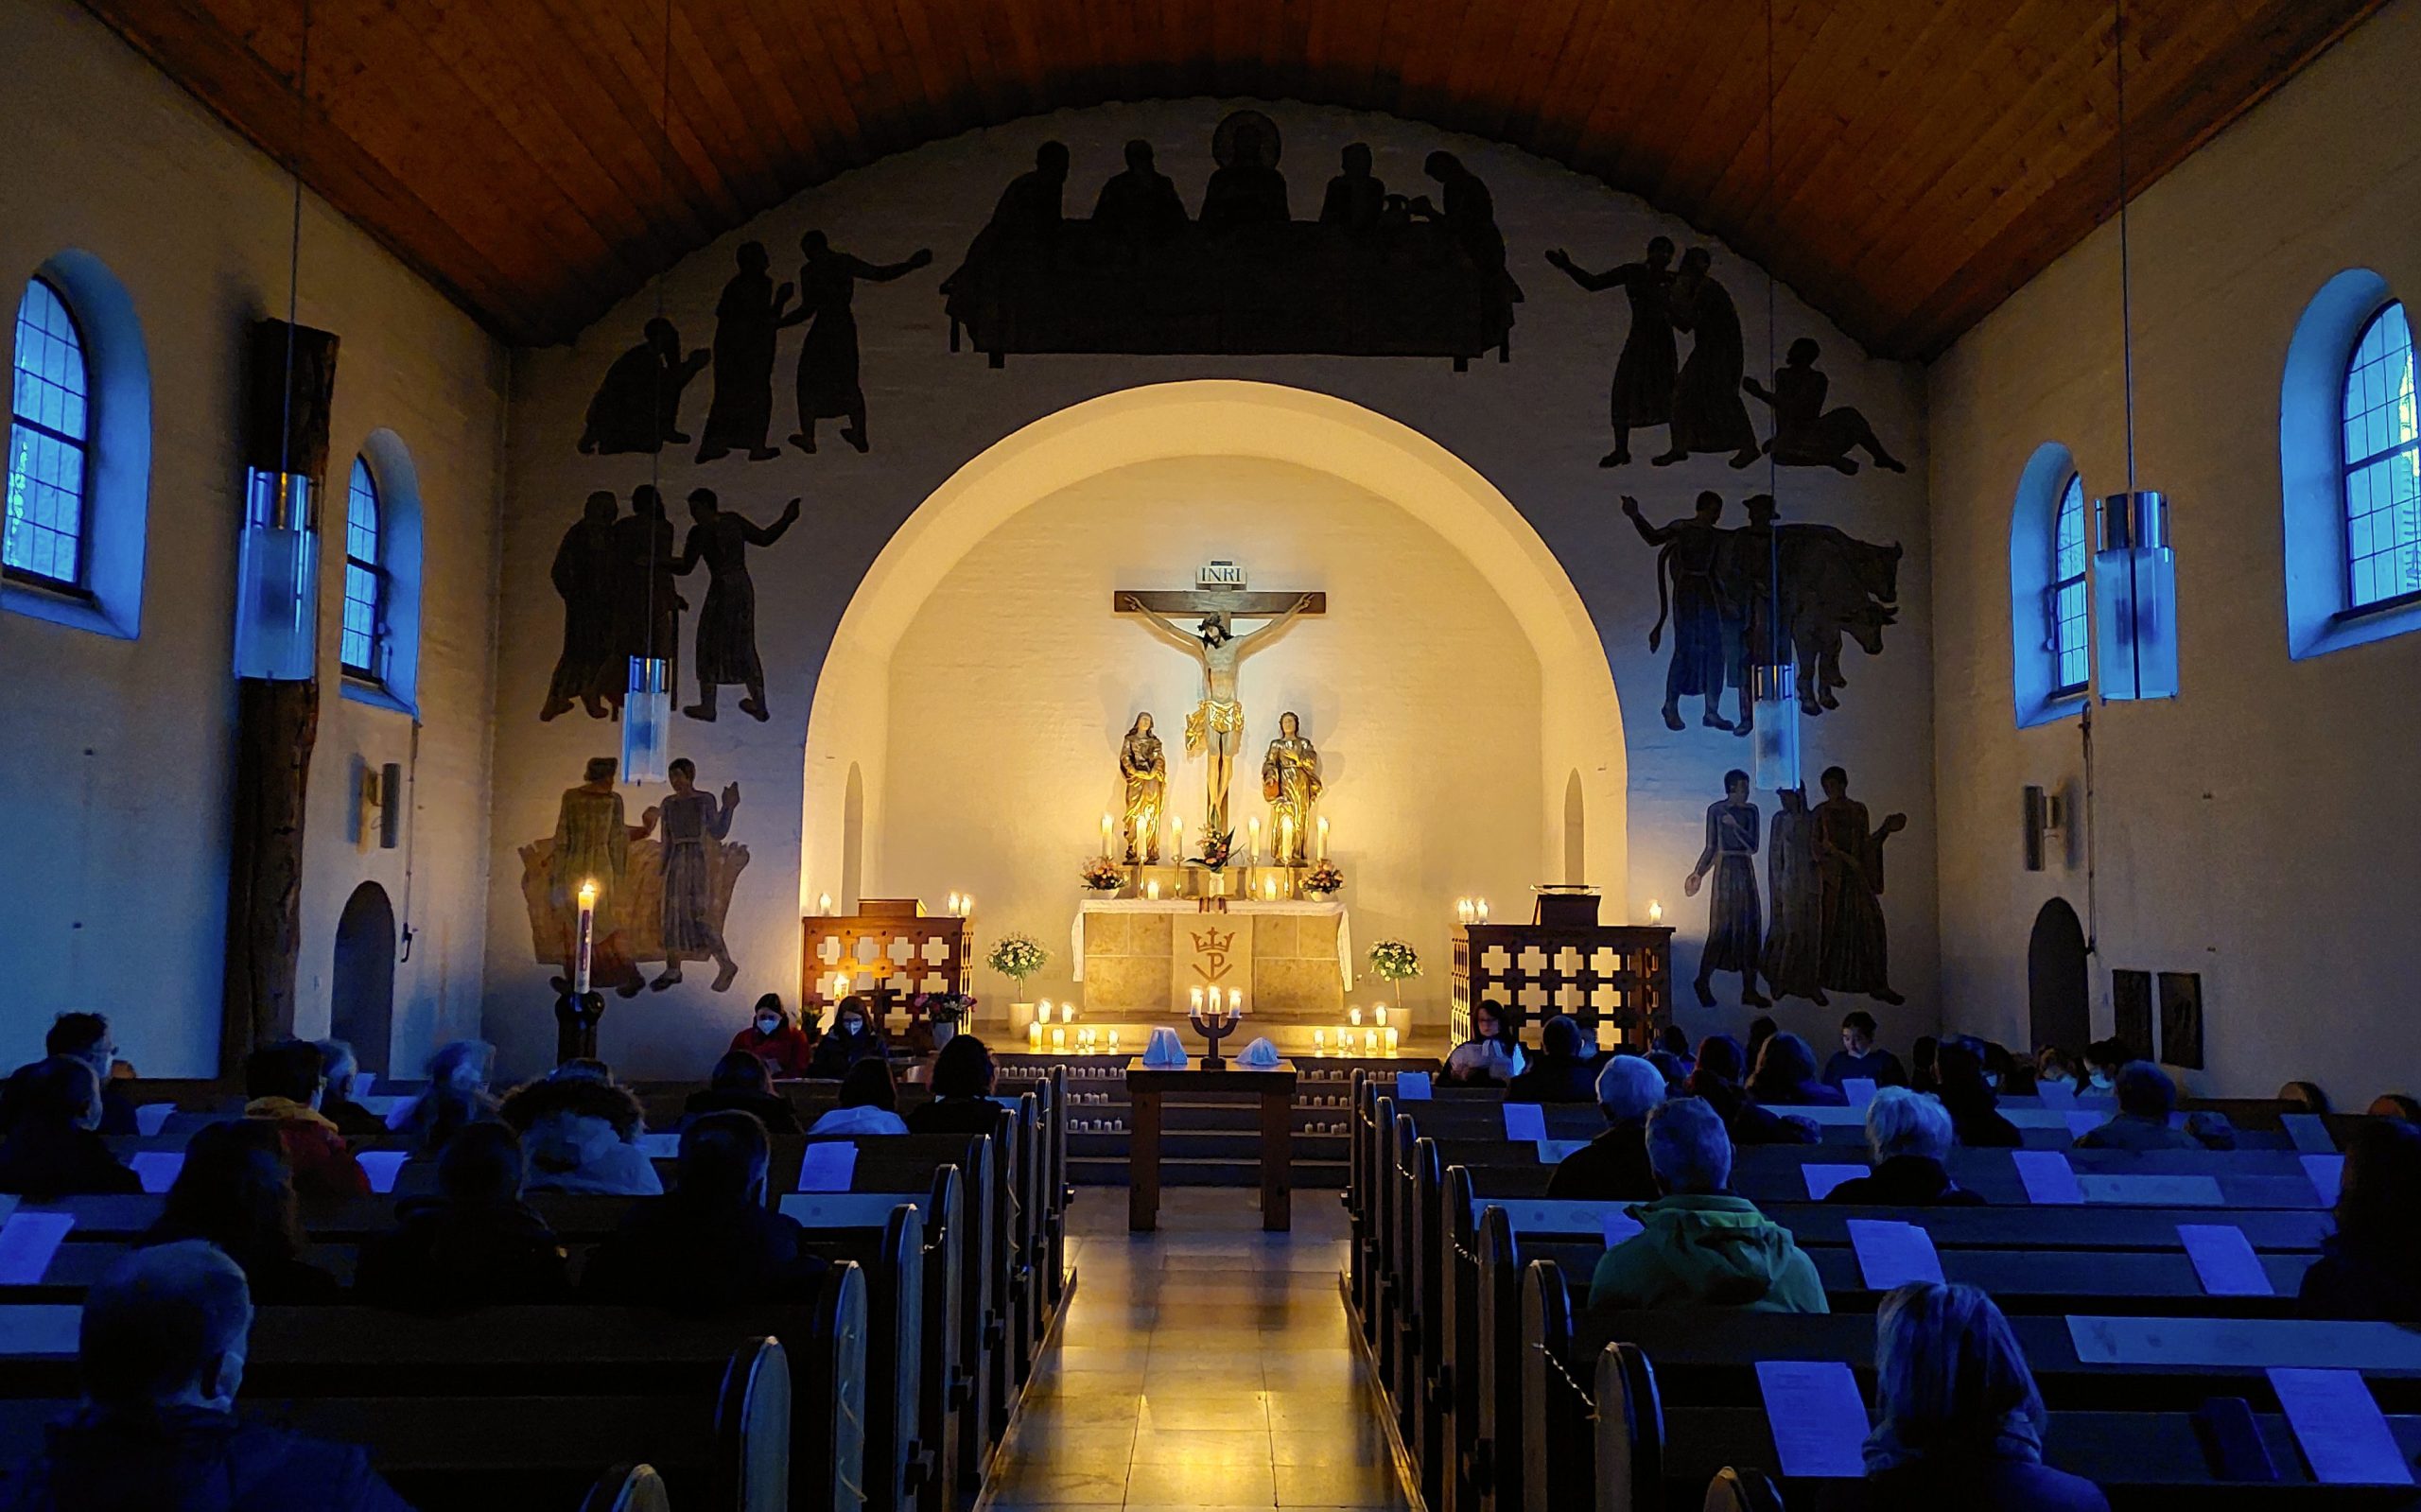 Osternacht in der Stephanuskirche. Der Altar ist durch Kerzenlicht hell erleuchtet, die Bankreihen sind noch im dunkeln.